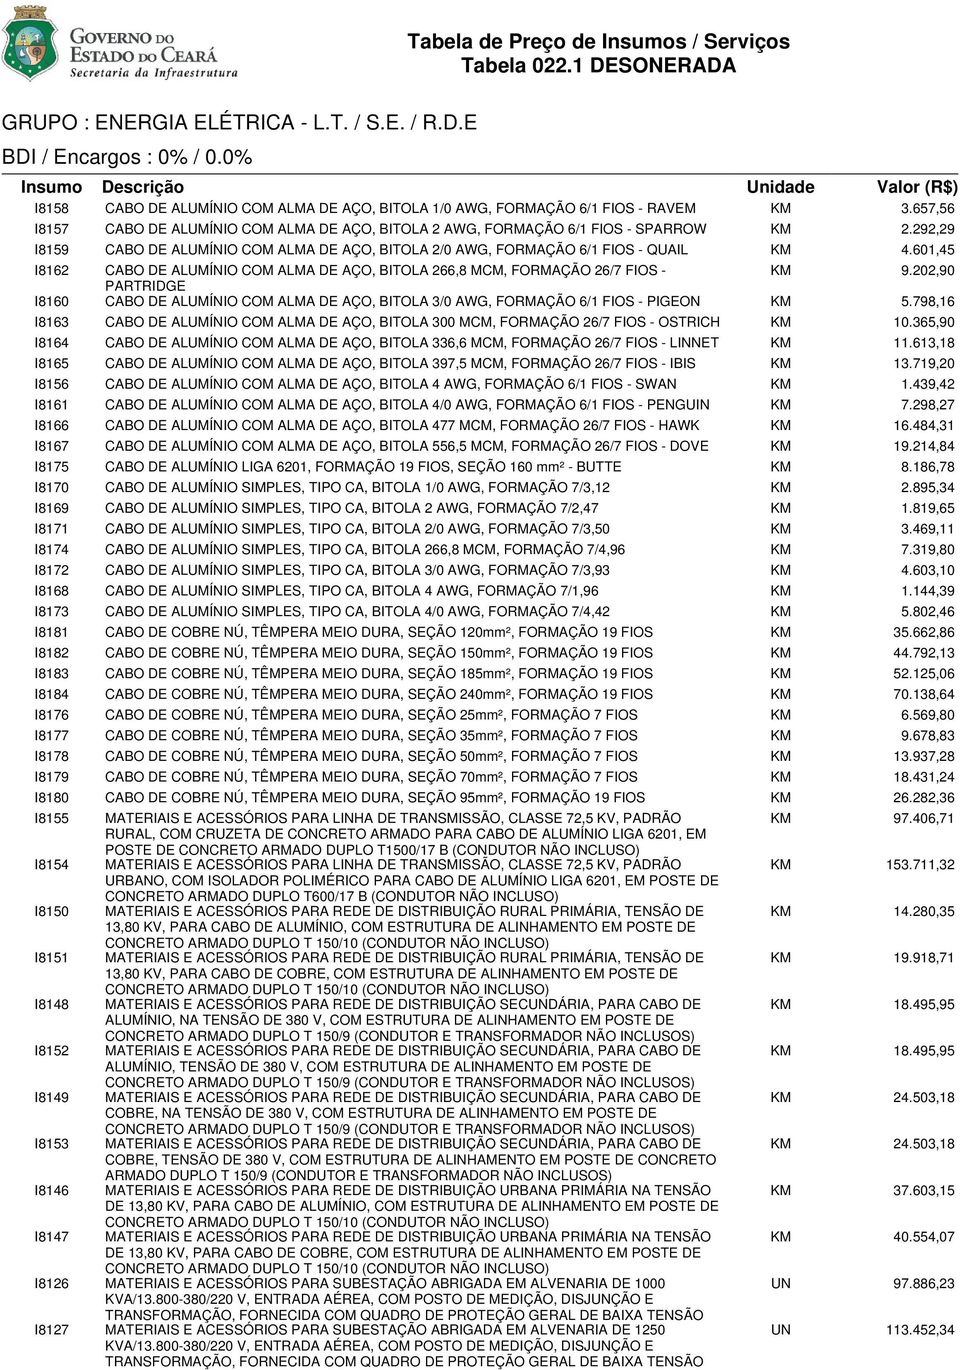 601,45 I8162 CABO DE ALUMÍNIO COM ALMA DE AÇO, BITOLA 266,8 MCM, FORMAÇÃO 26/7 FIOS - KM 9.202,90 PARTRIDGE I8160 CABO DE ALUMÍNIO COM ALMA DE AÇO, BITOLA 3/0 AWG, FORMAÇÃO 6/1 FIOS - PIGEON KM 5.